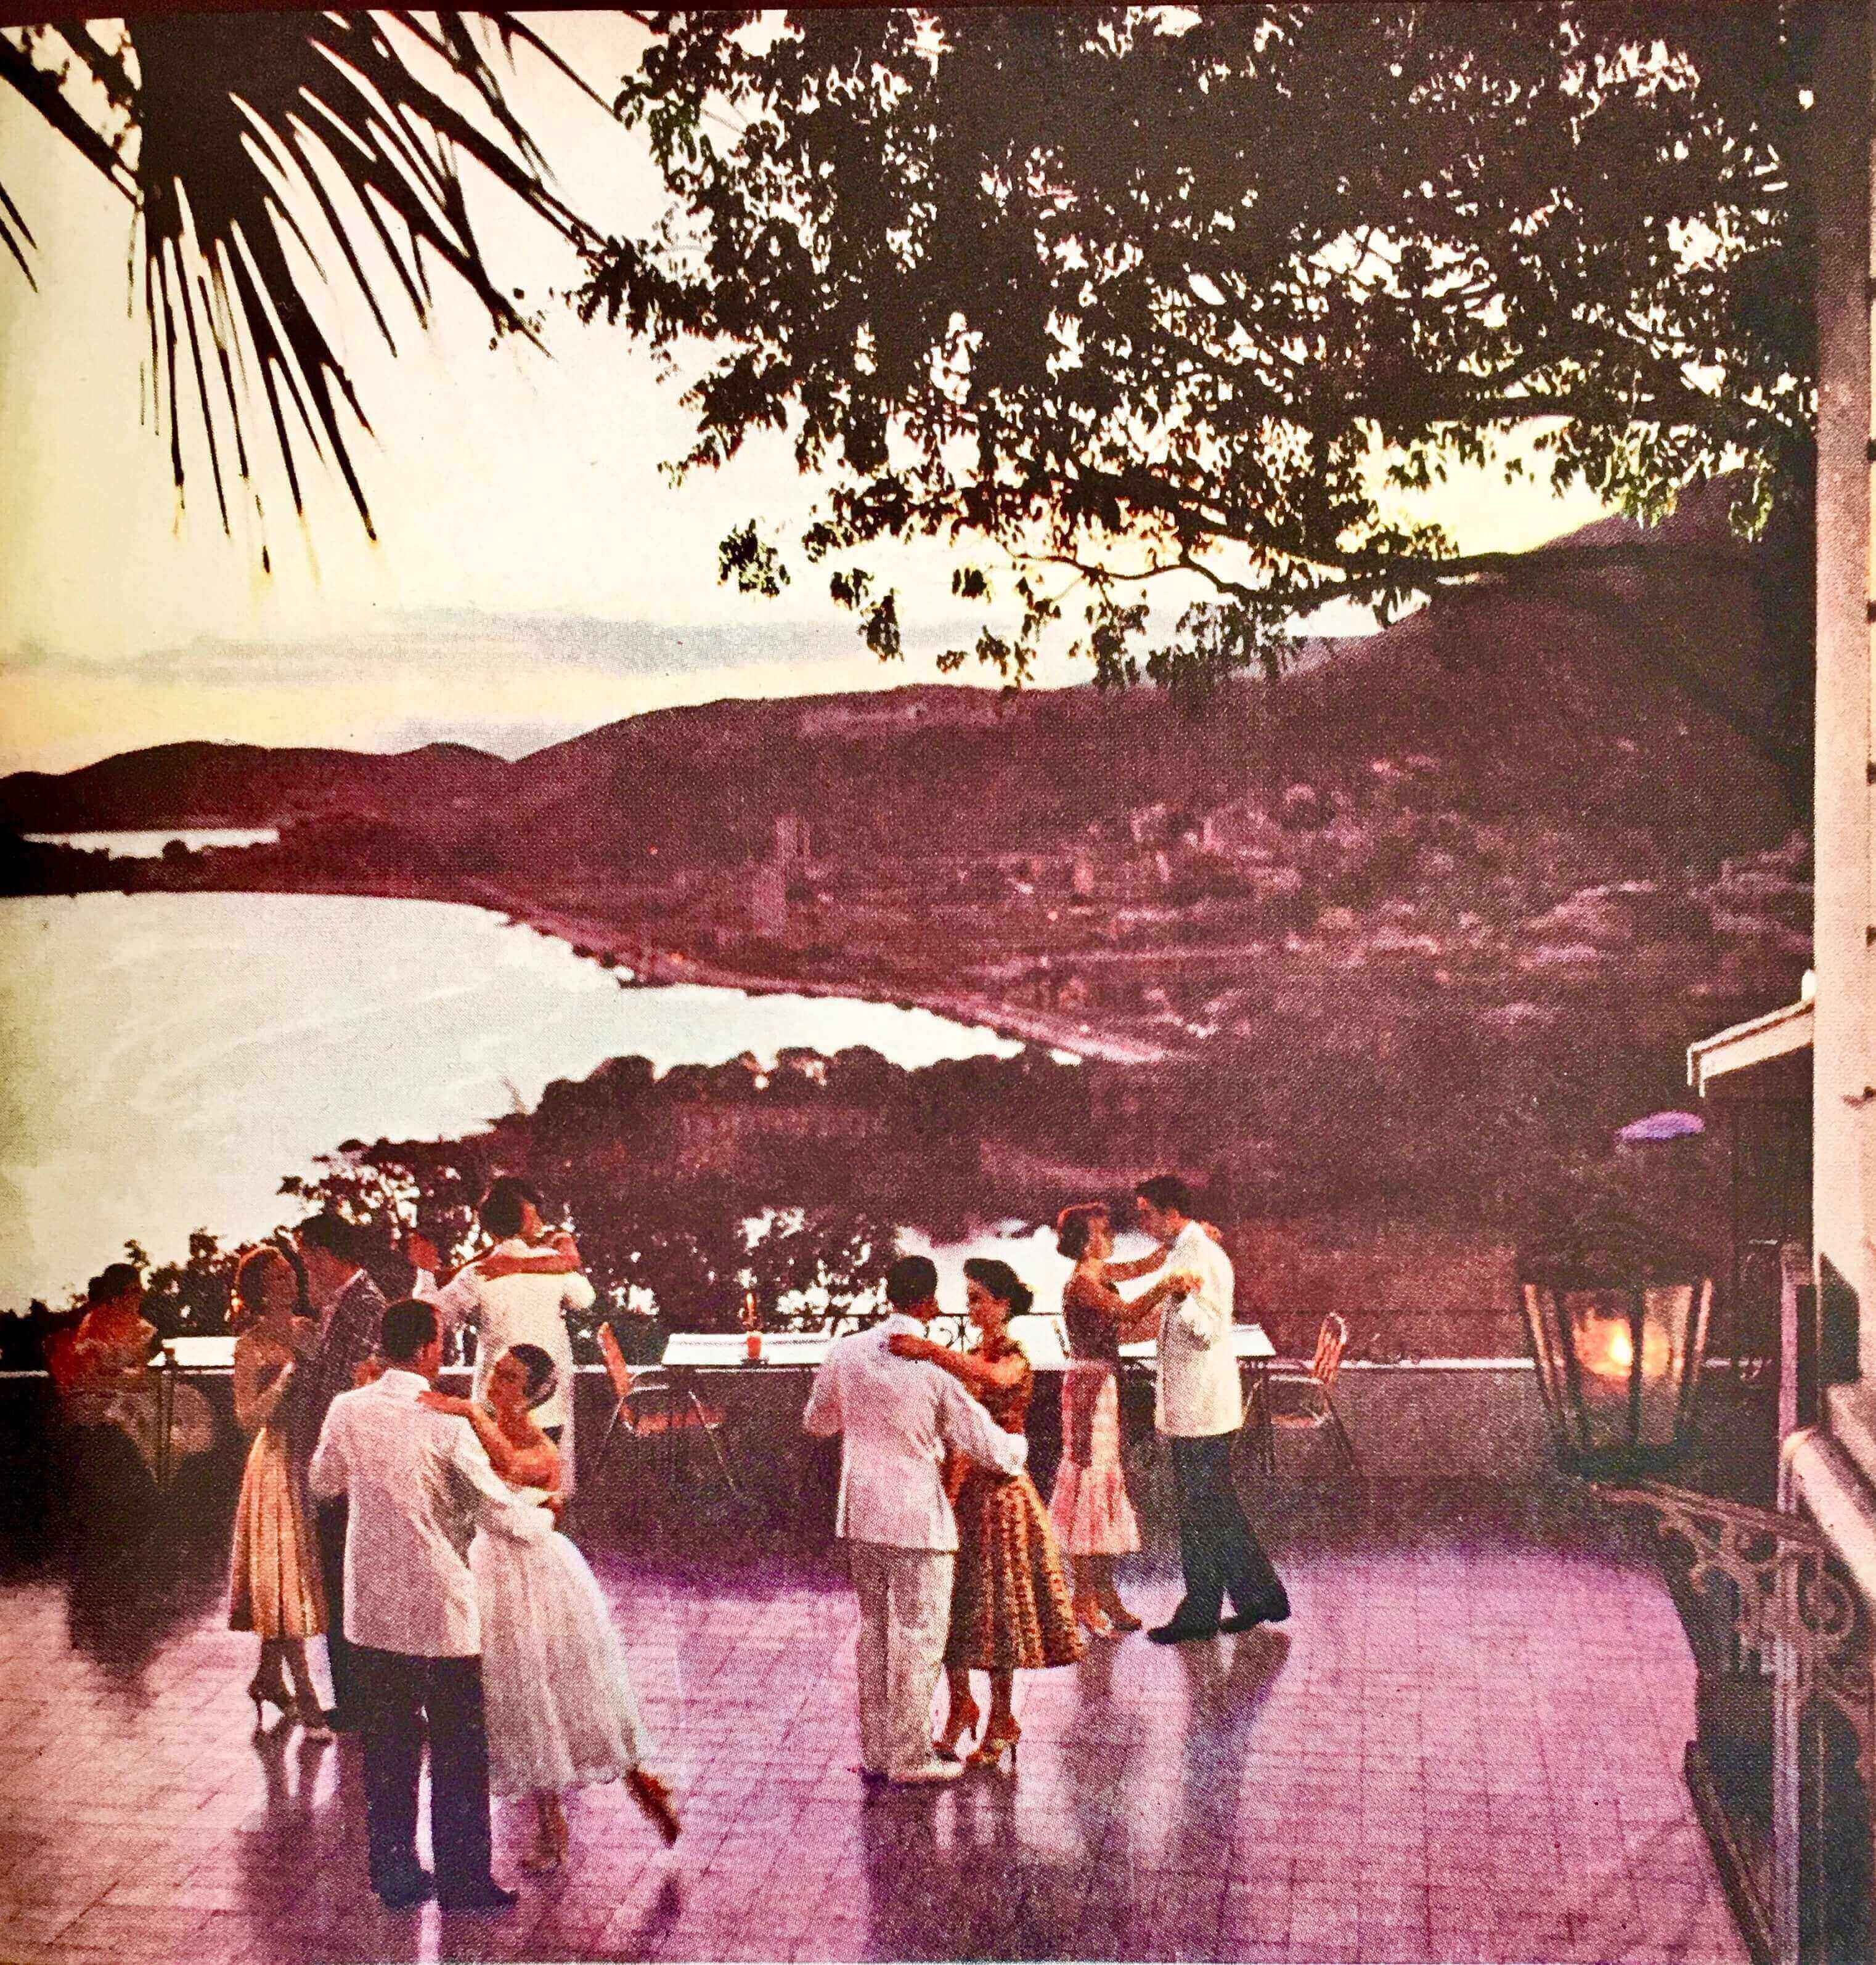 1956, Redbook Magazine of the Virgin Islands